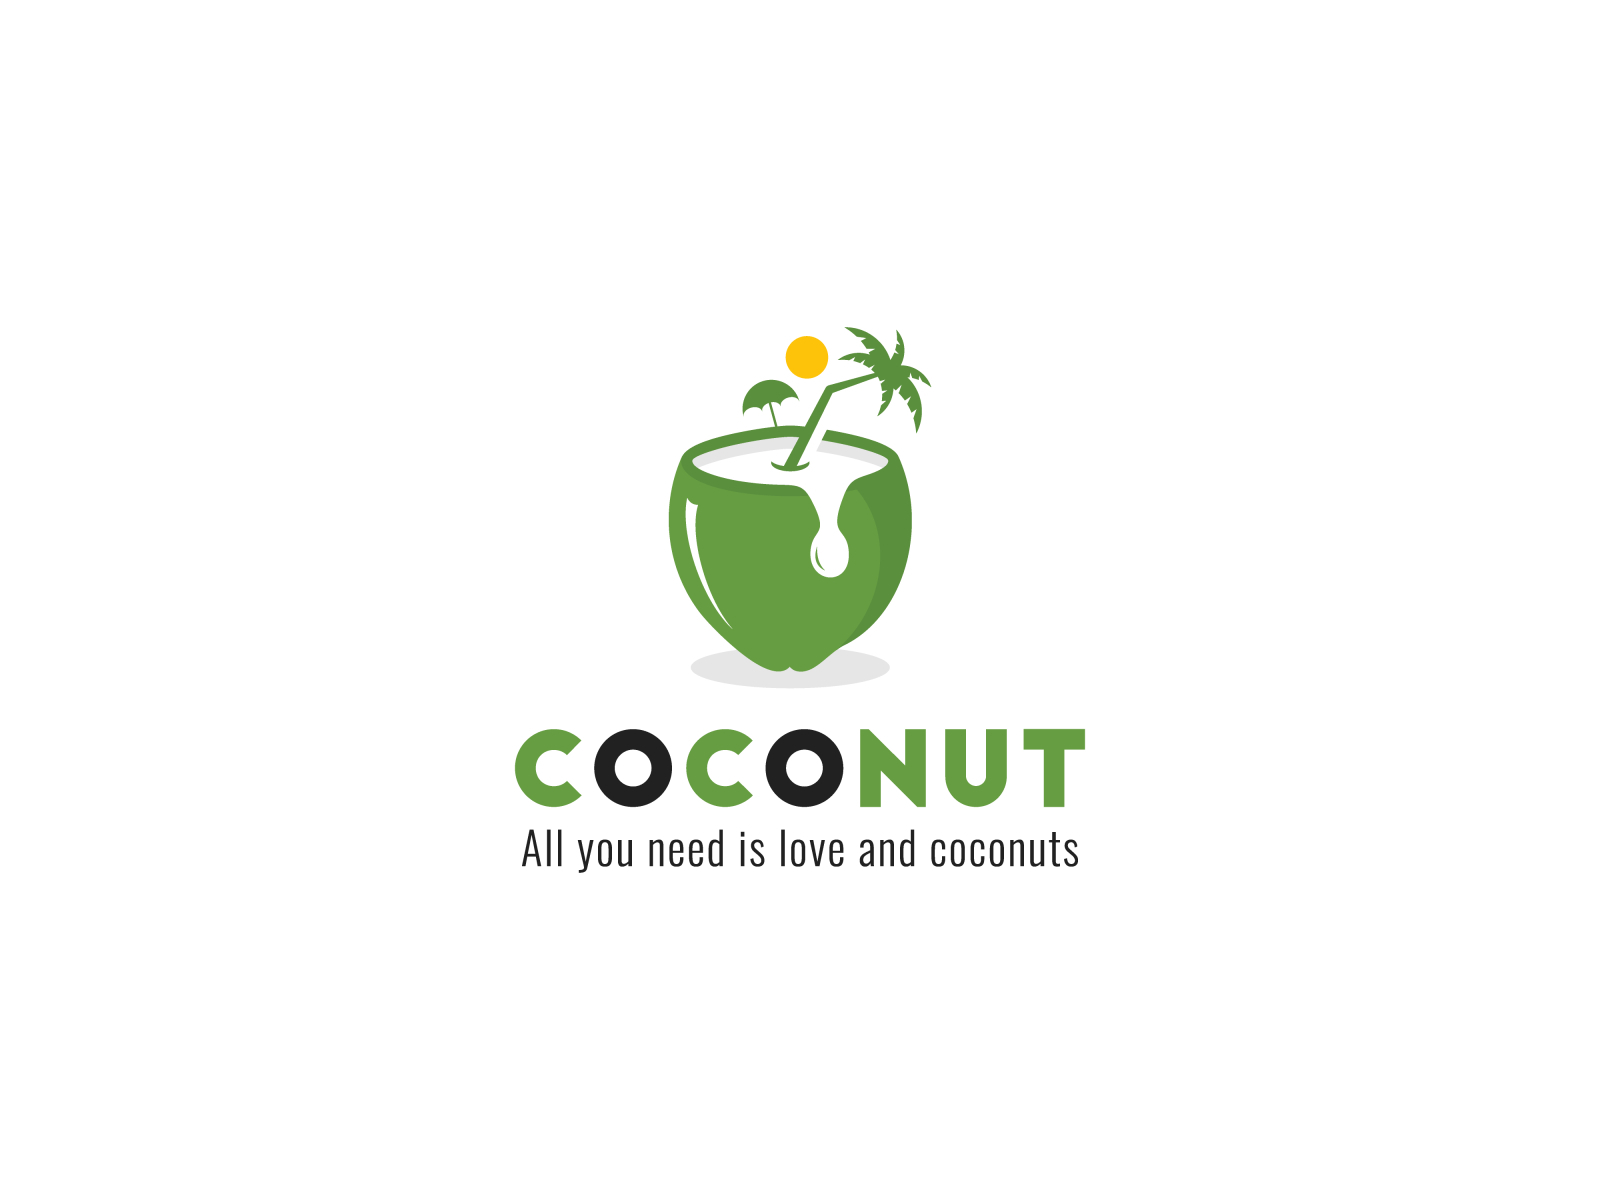 Modern Minimalist Coconut logo by Umar Ashraf on Dribbble